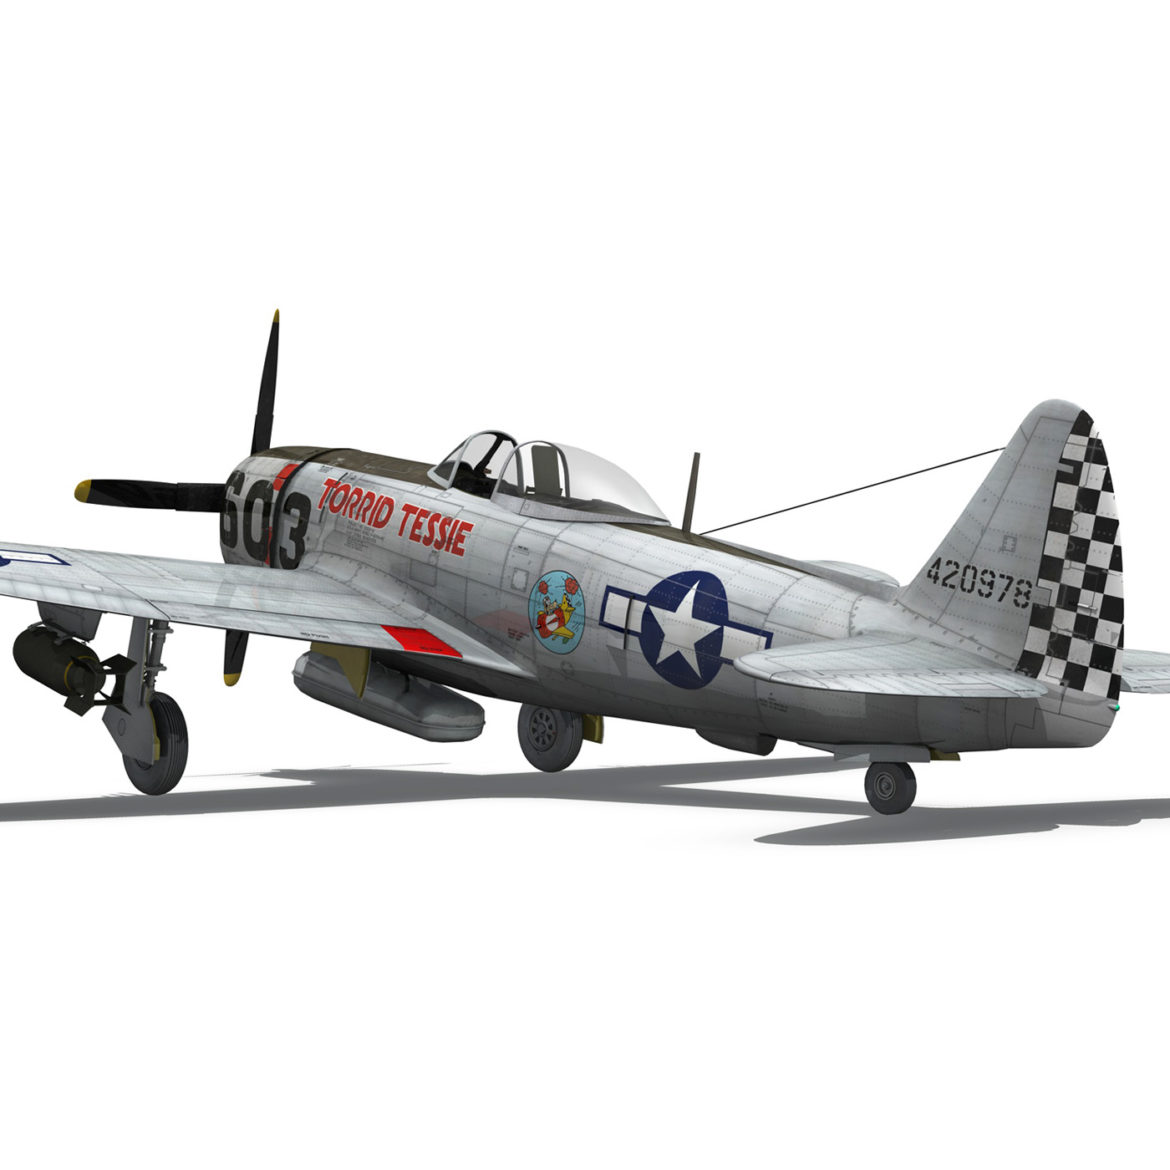 republic p-47d thunderbolt – torrid tessie 3d model 3ds c4d lwo lw lws obj fbx 303872